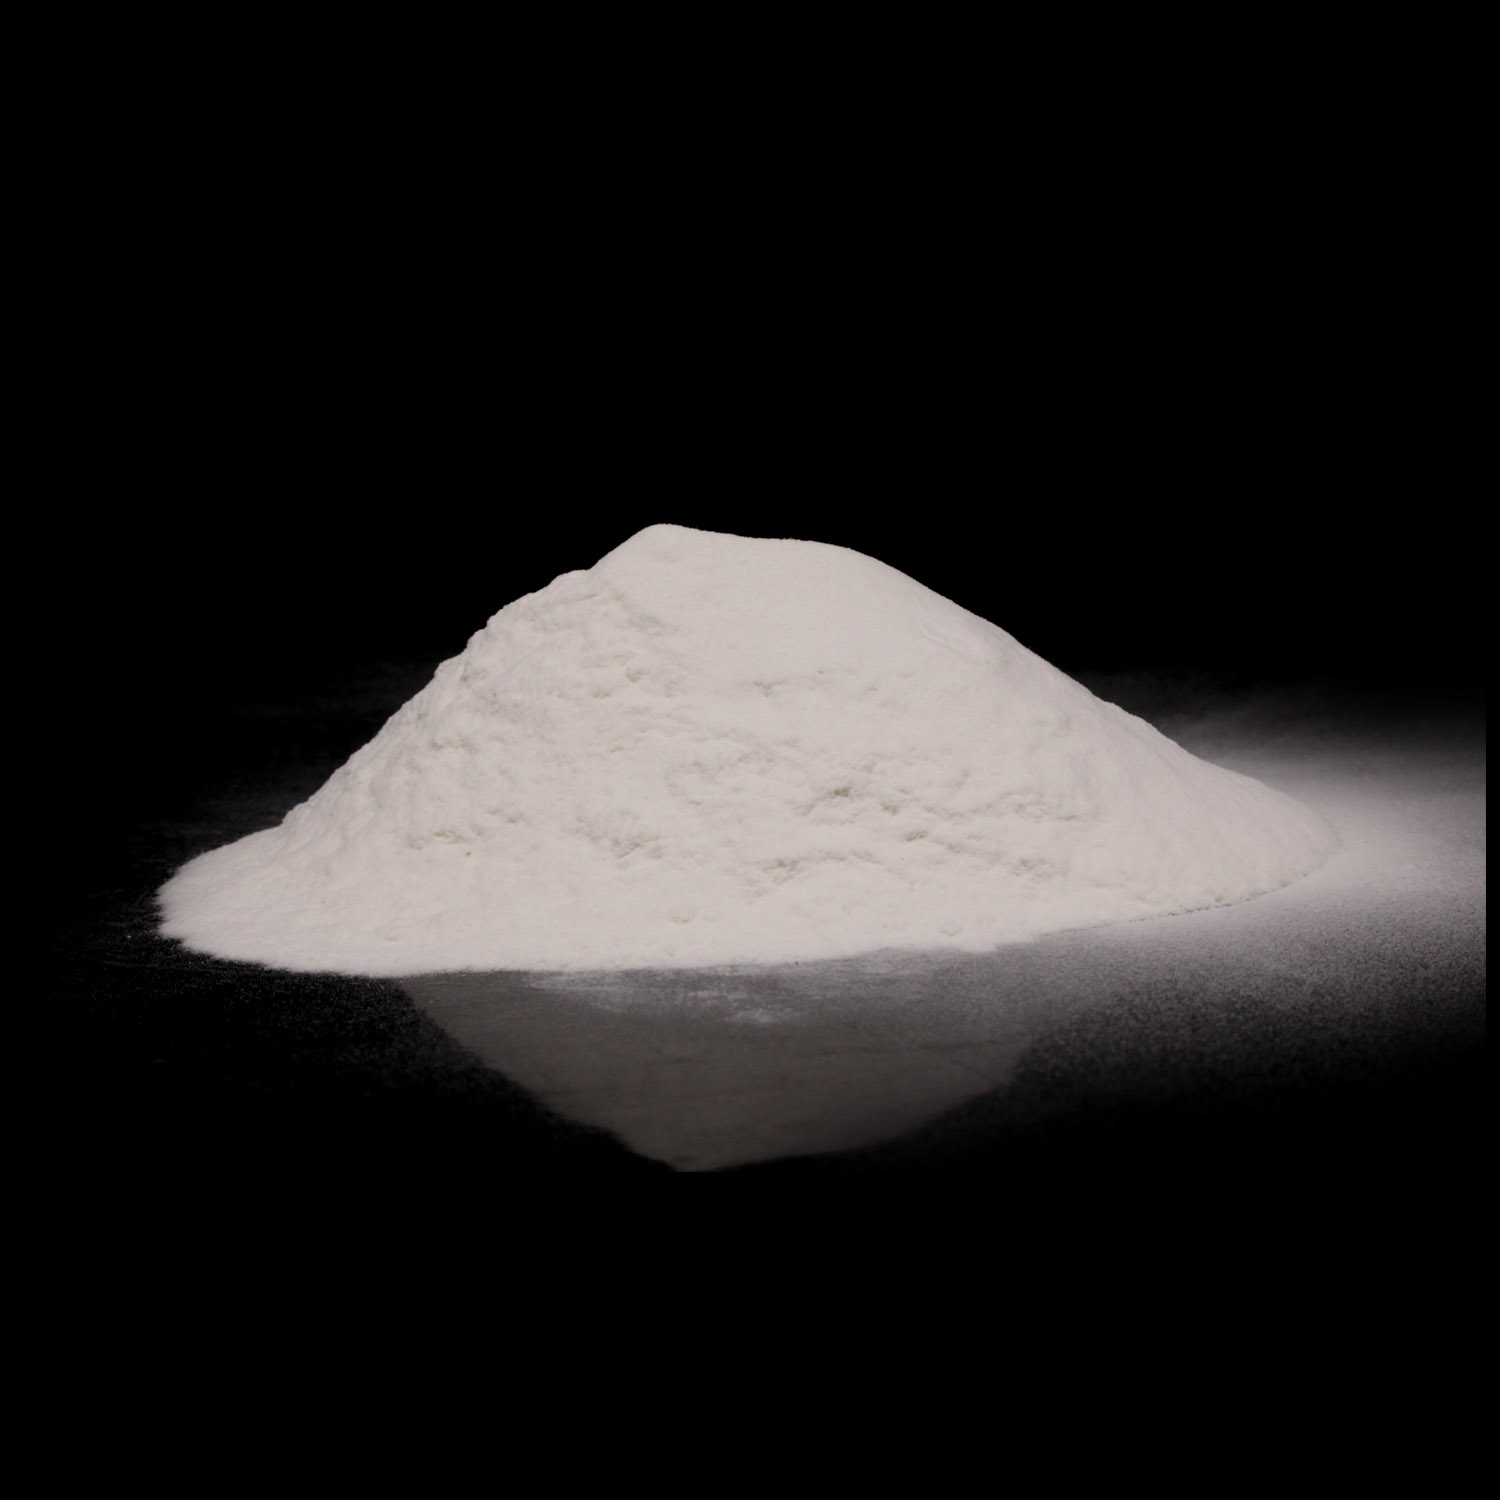 L-精氨酸盐酸盐